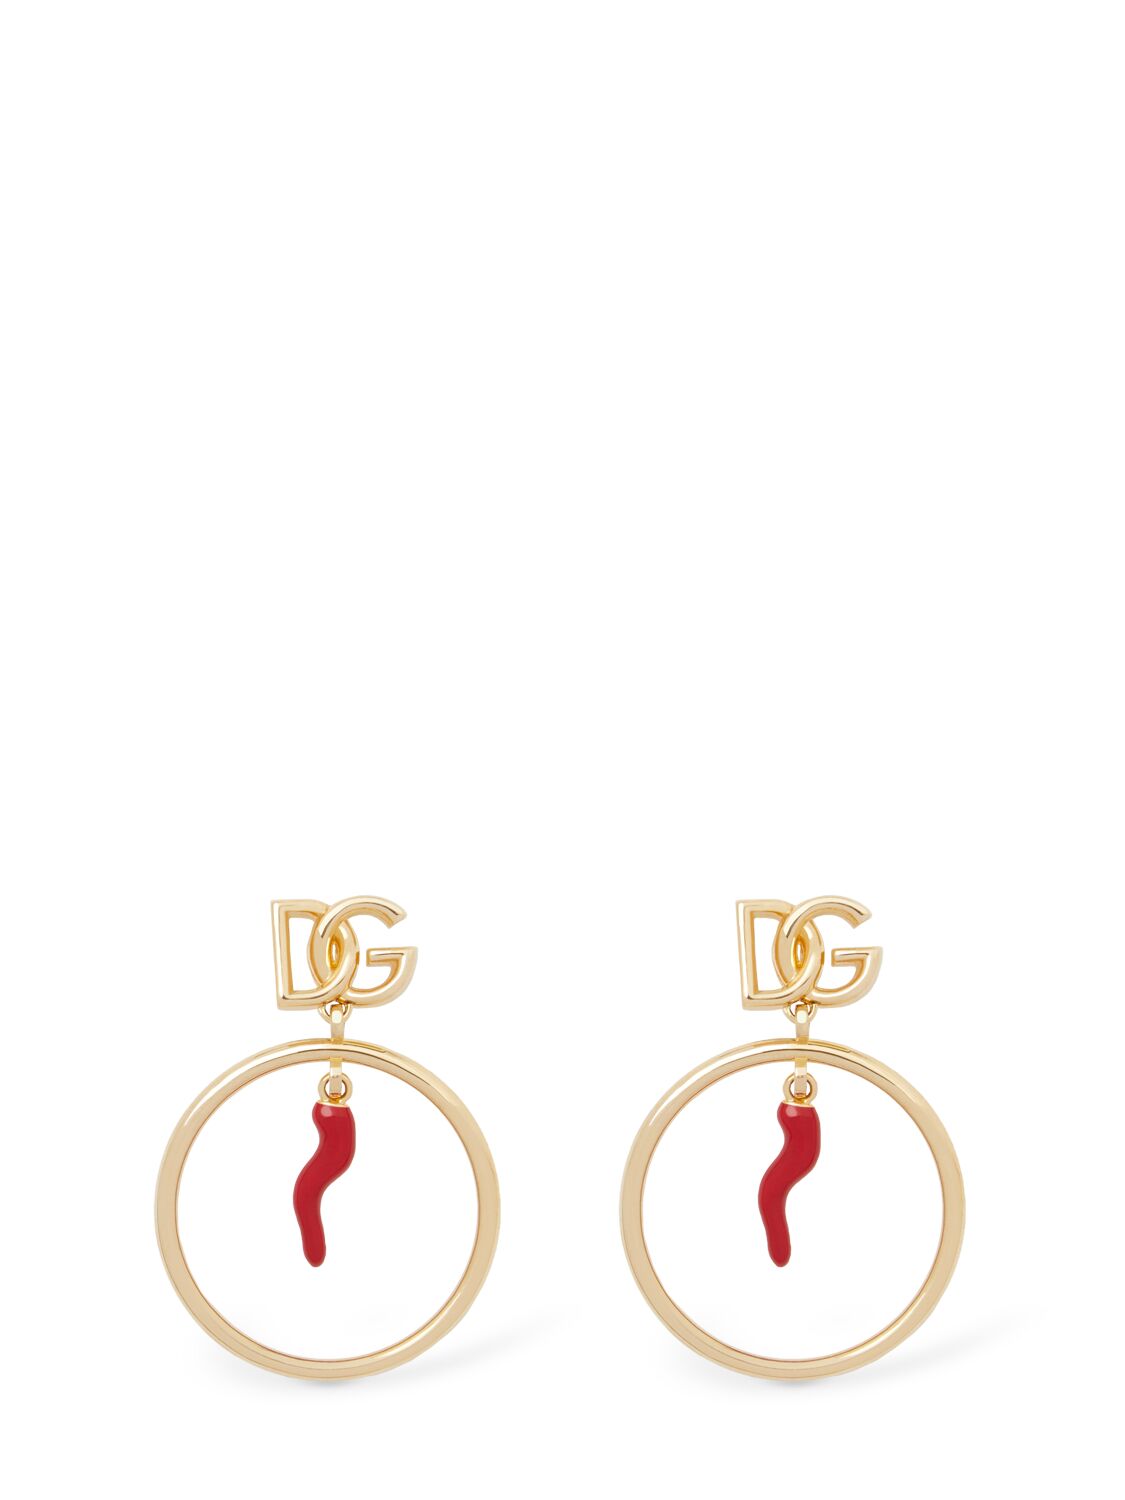 Dolce & Gabbana Dg Logo & Charm Hoop Earrings In Gold